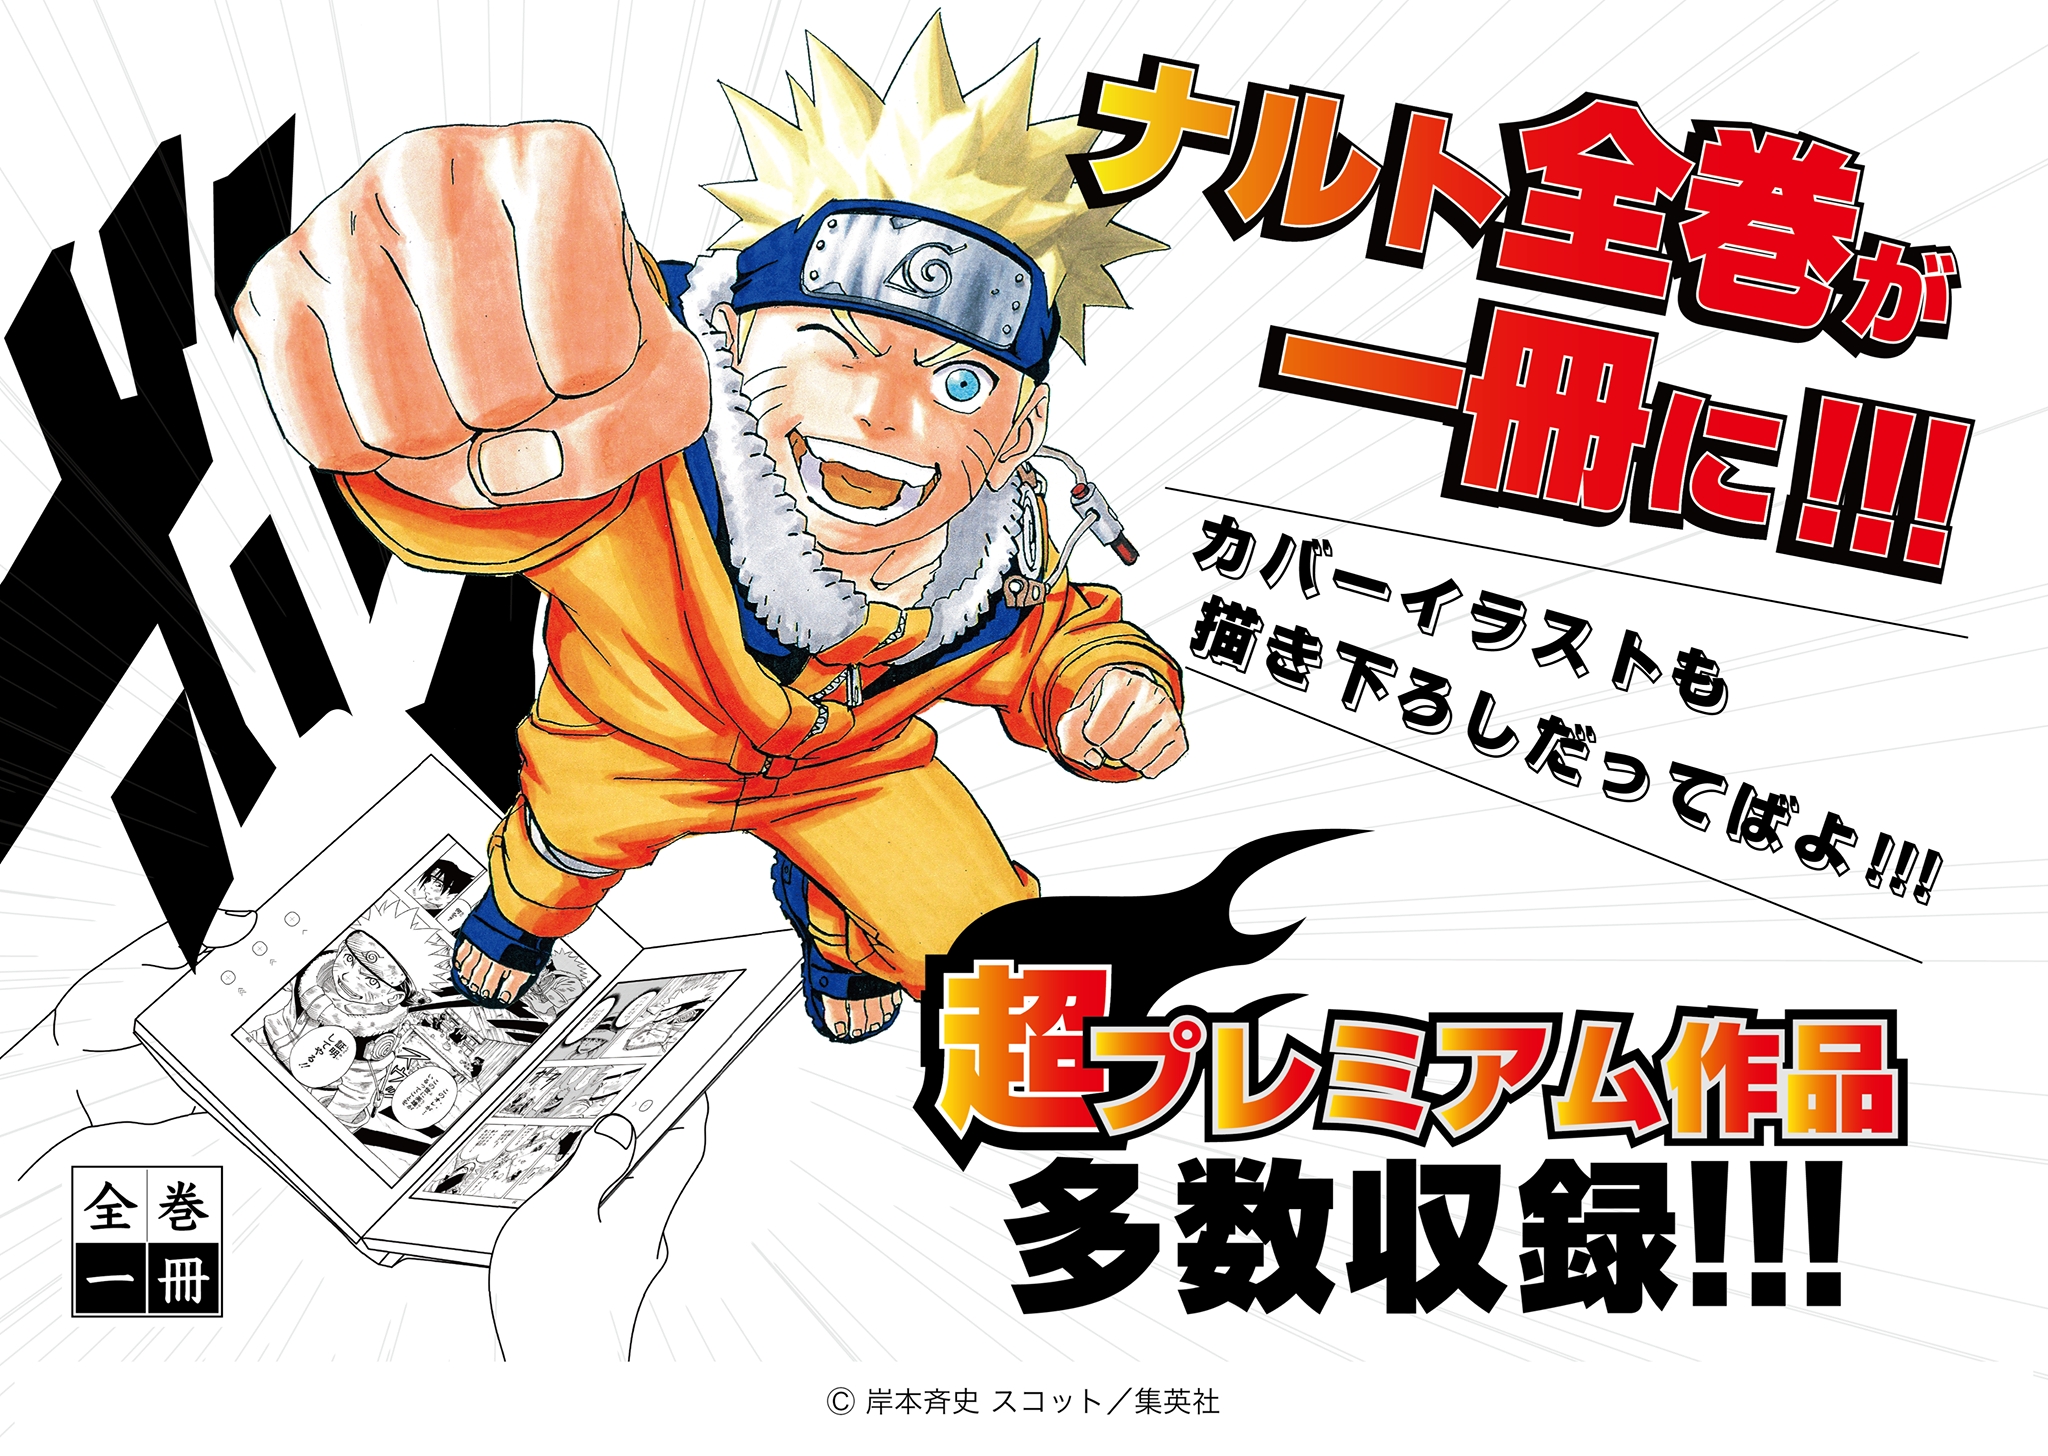 大好評 全巻一冊シリーズに Naruto ナルト 描き下ろしカバー プレミアム作品も収録 カルチュア コンビニエンス クラブ株式会社のプレスリリース